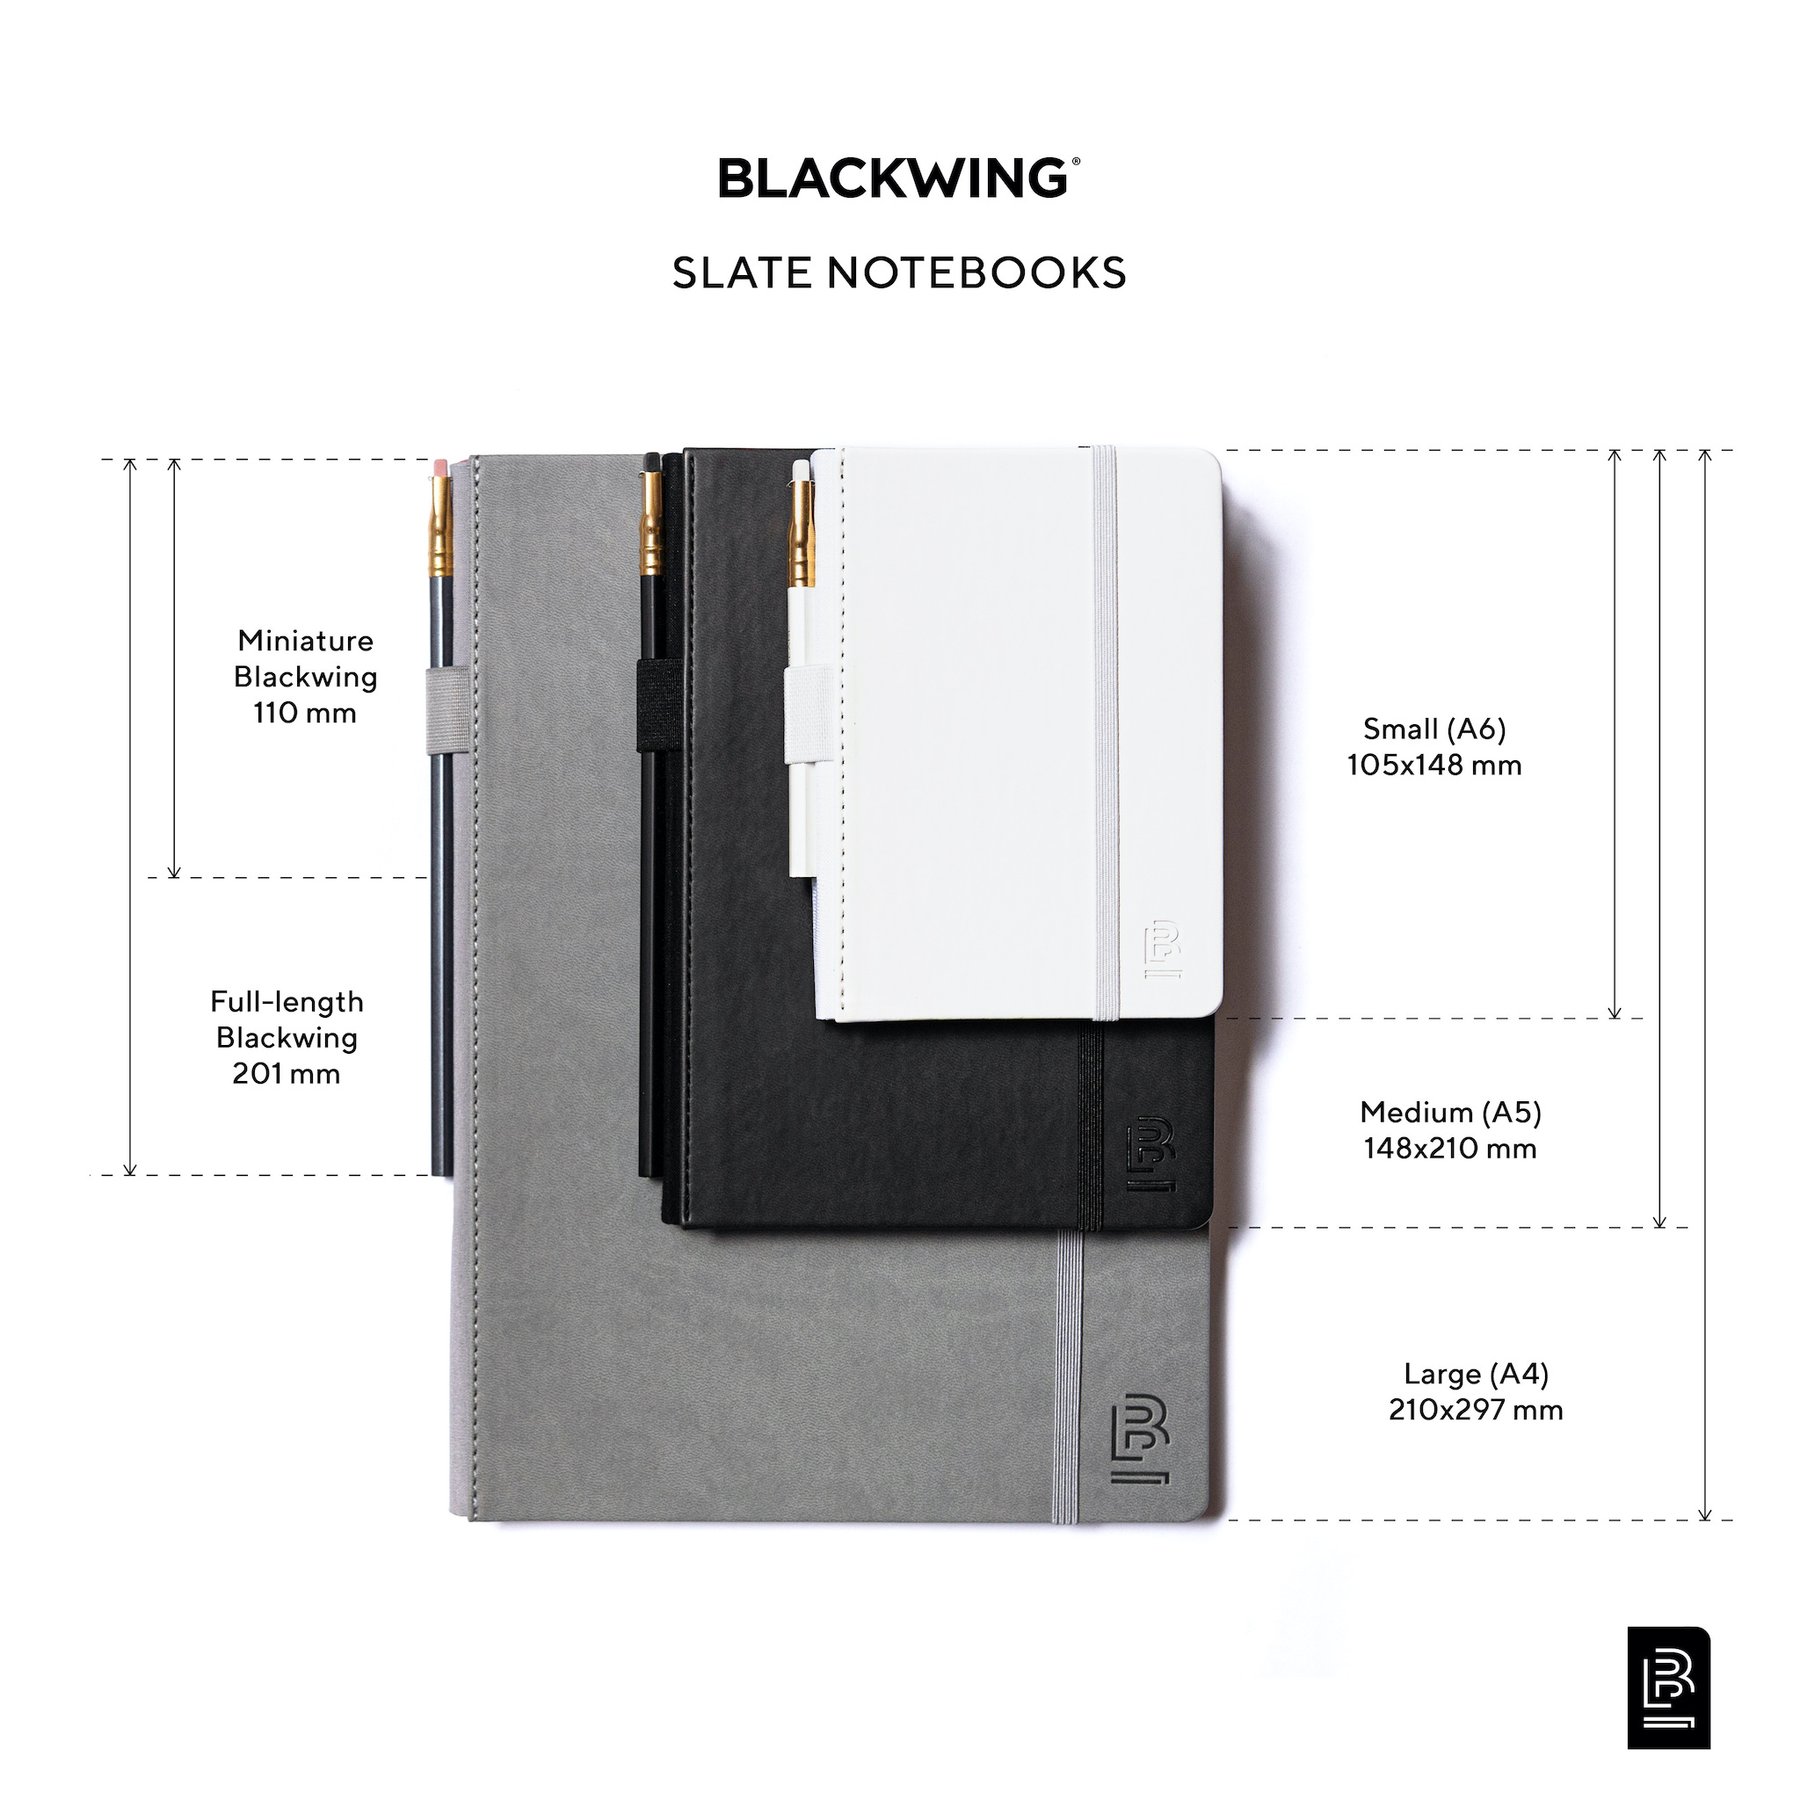 Cuaderno de BlackWing en diferentes tamaños.